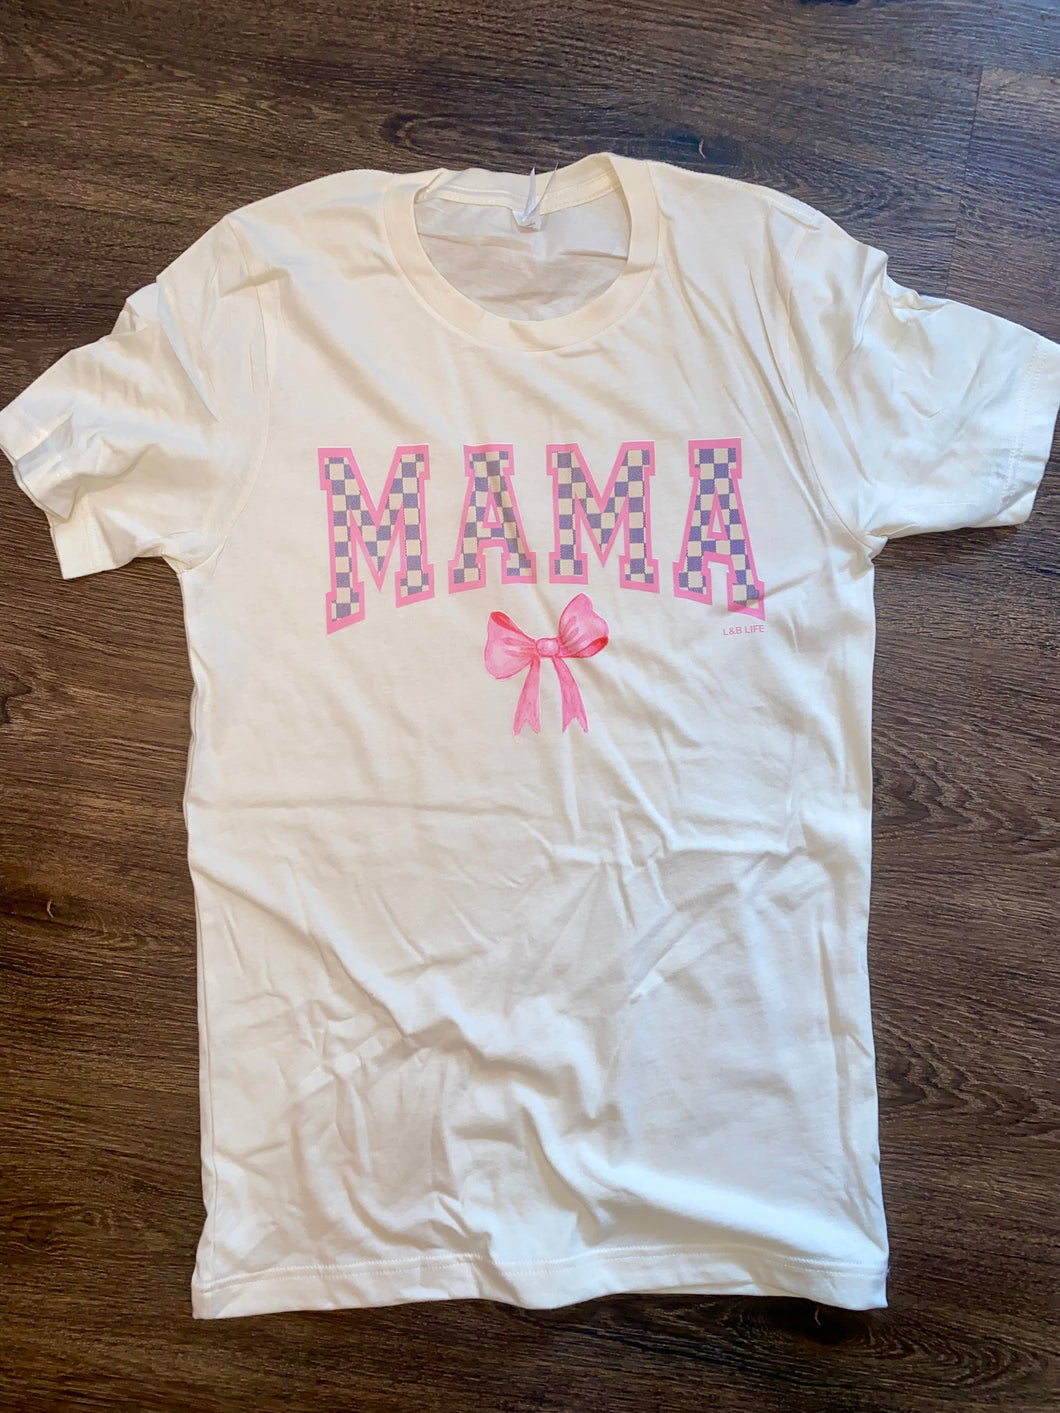 Checkered mama t-shirt